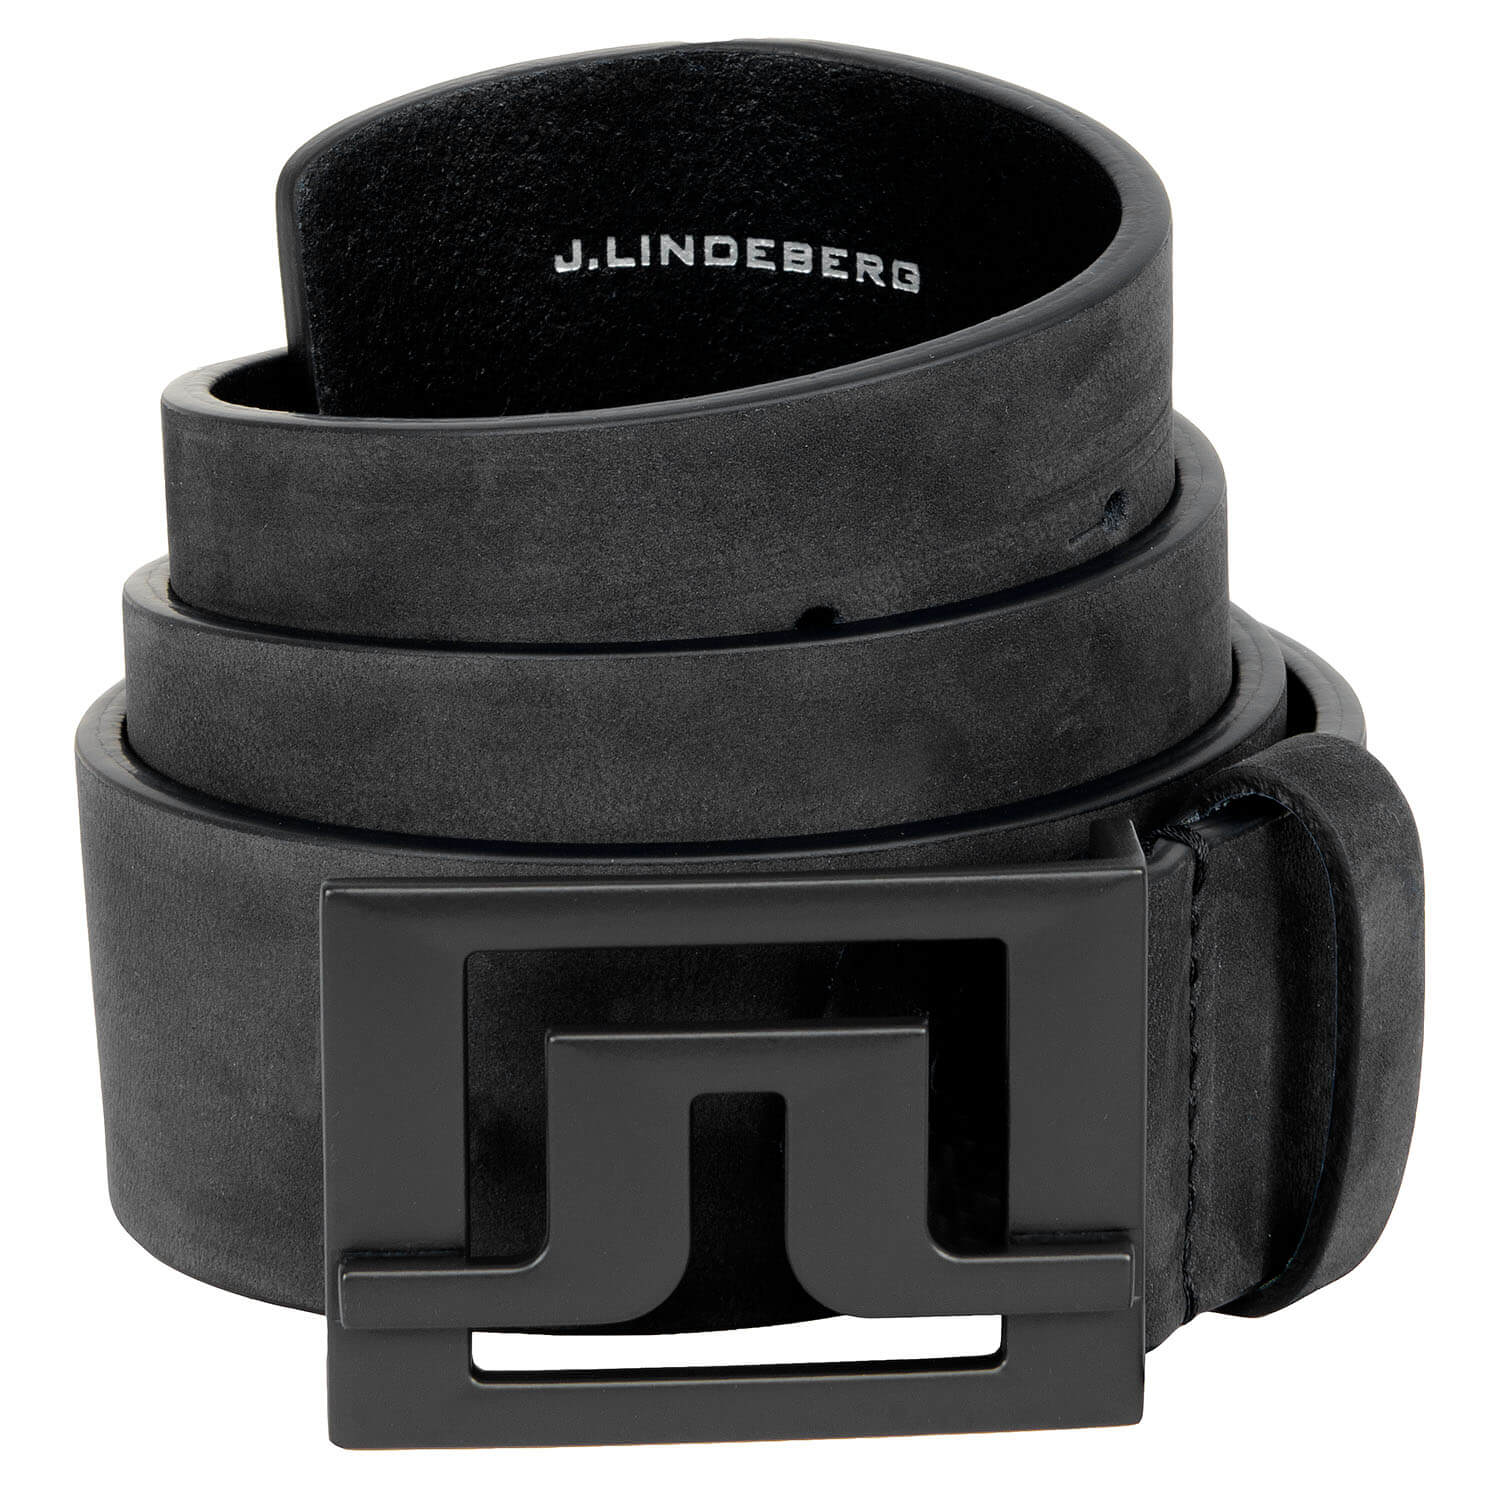 J Lindeberg Slater Leather Belt